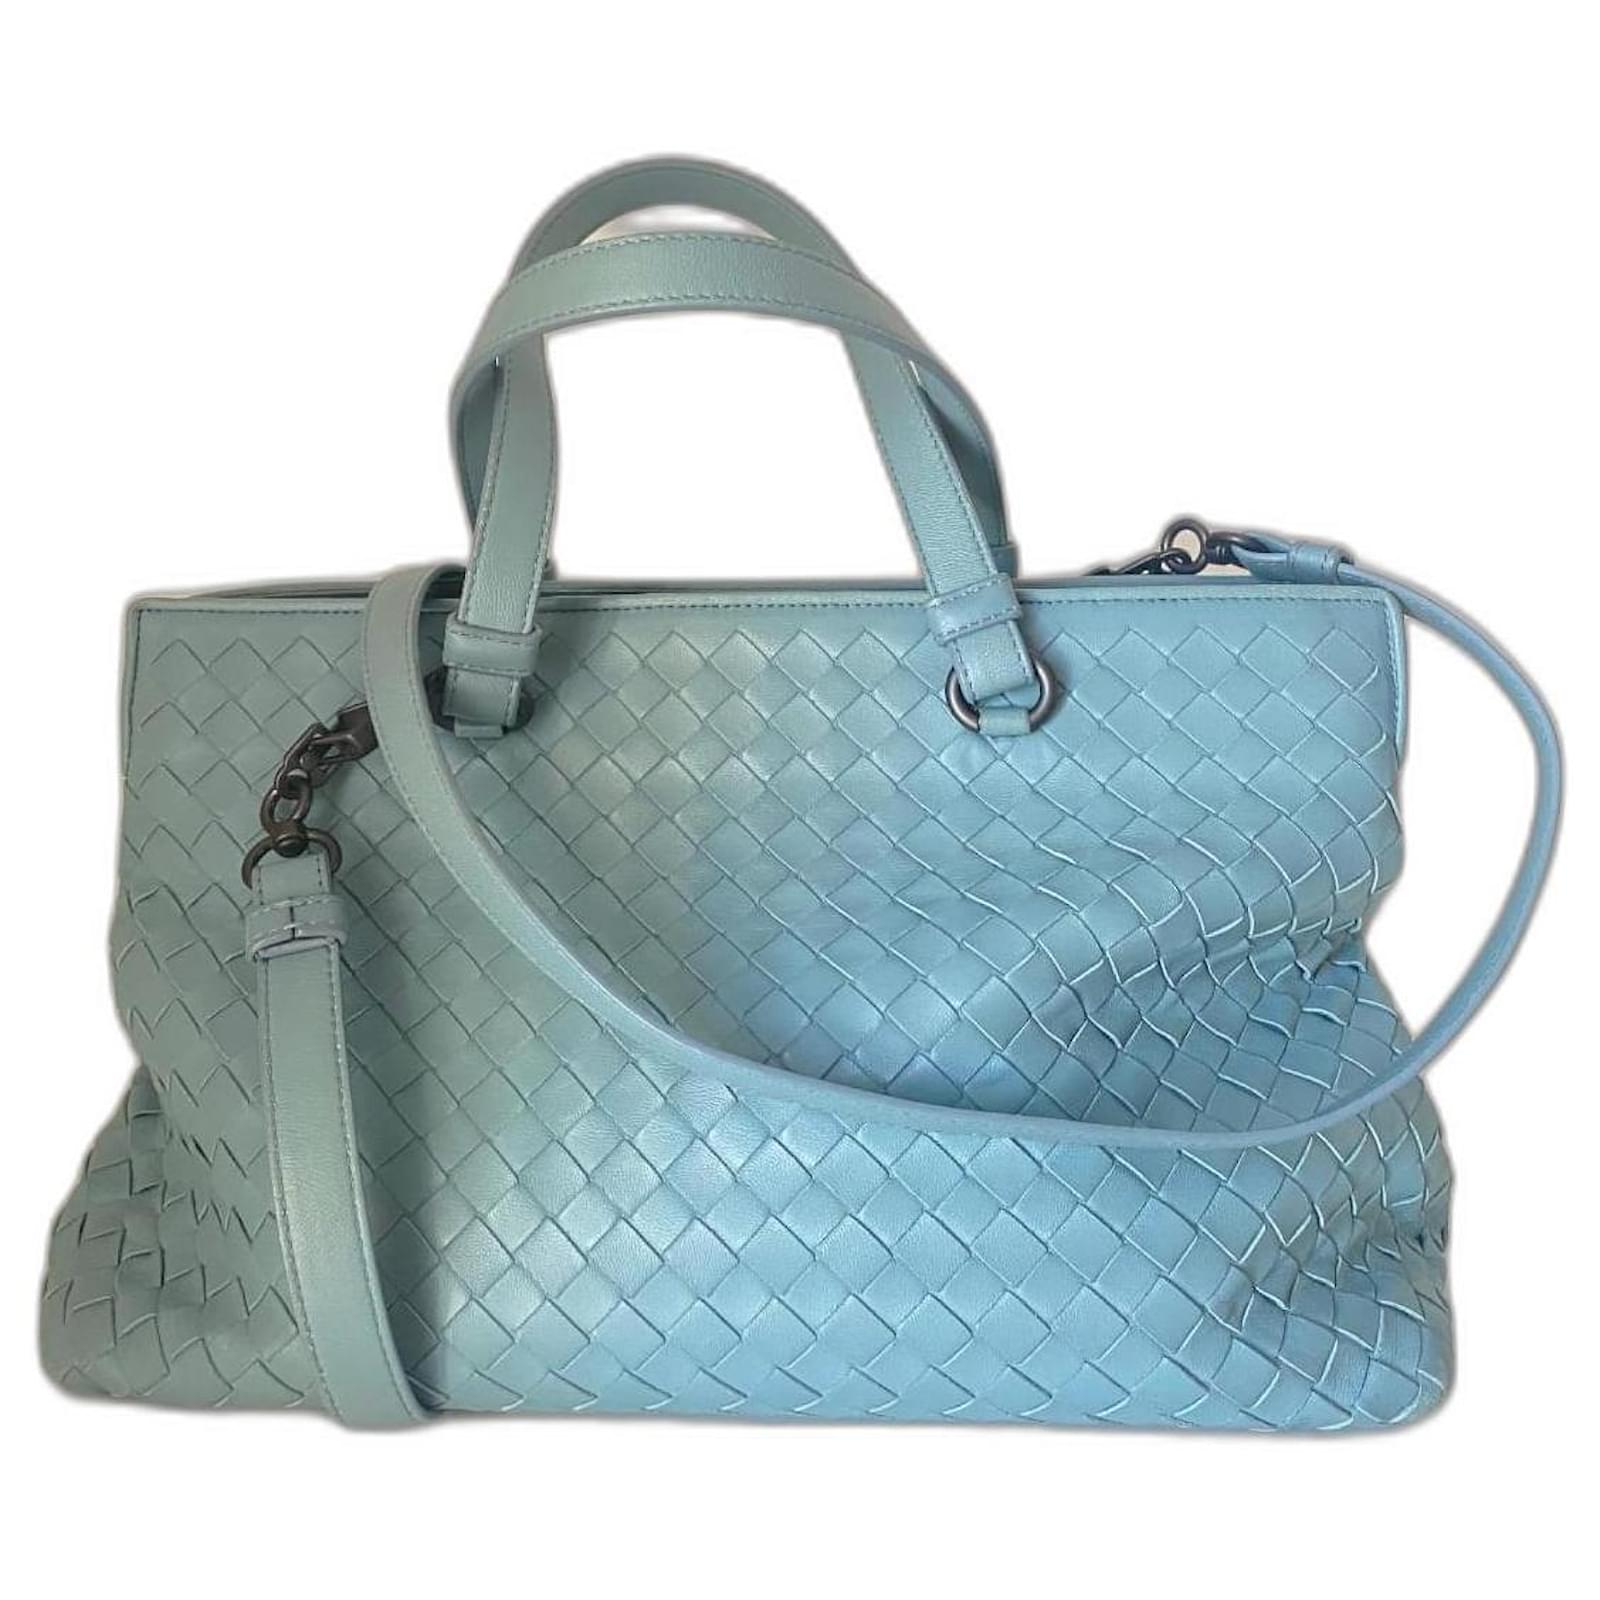 Bottega Veneta Women's Bags